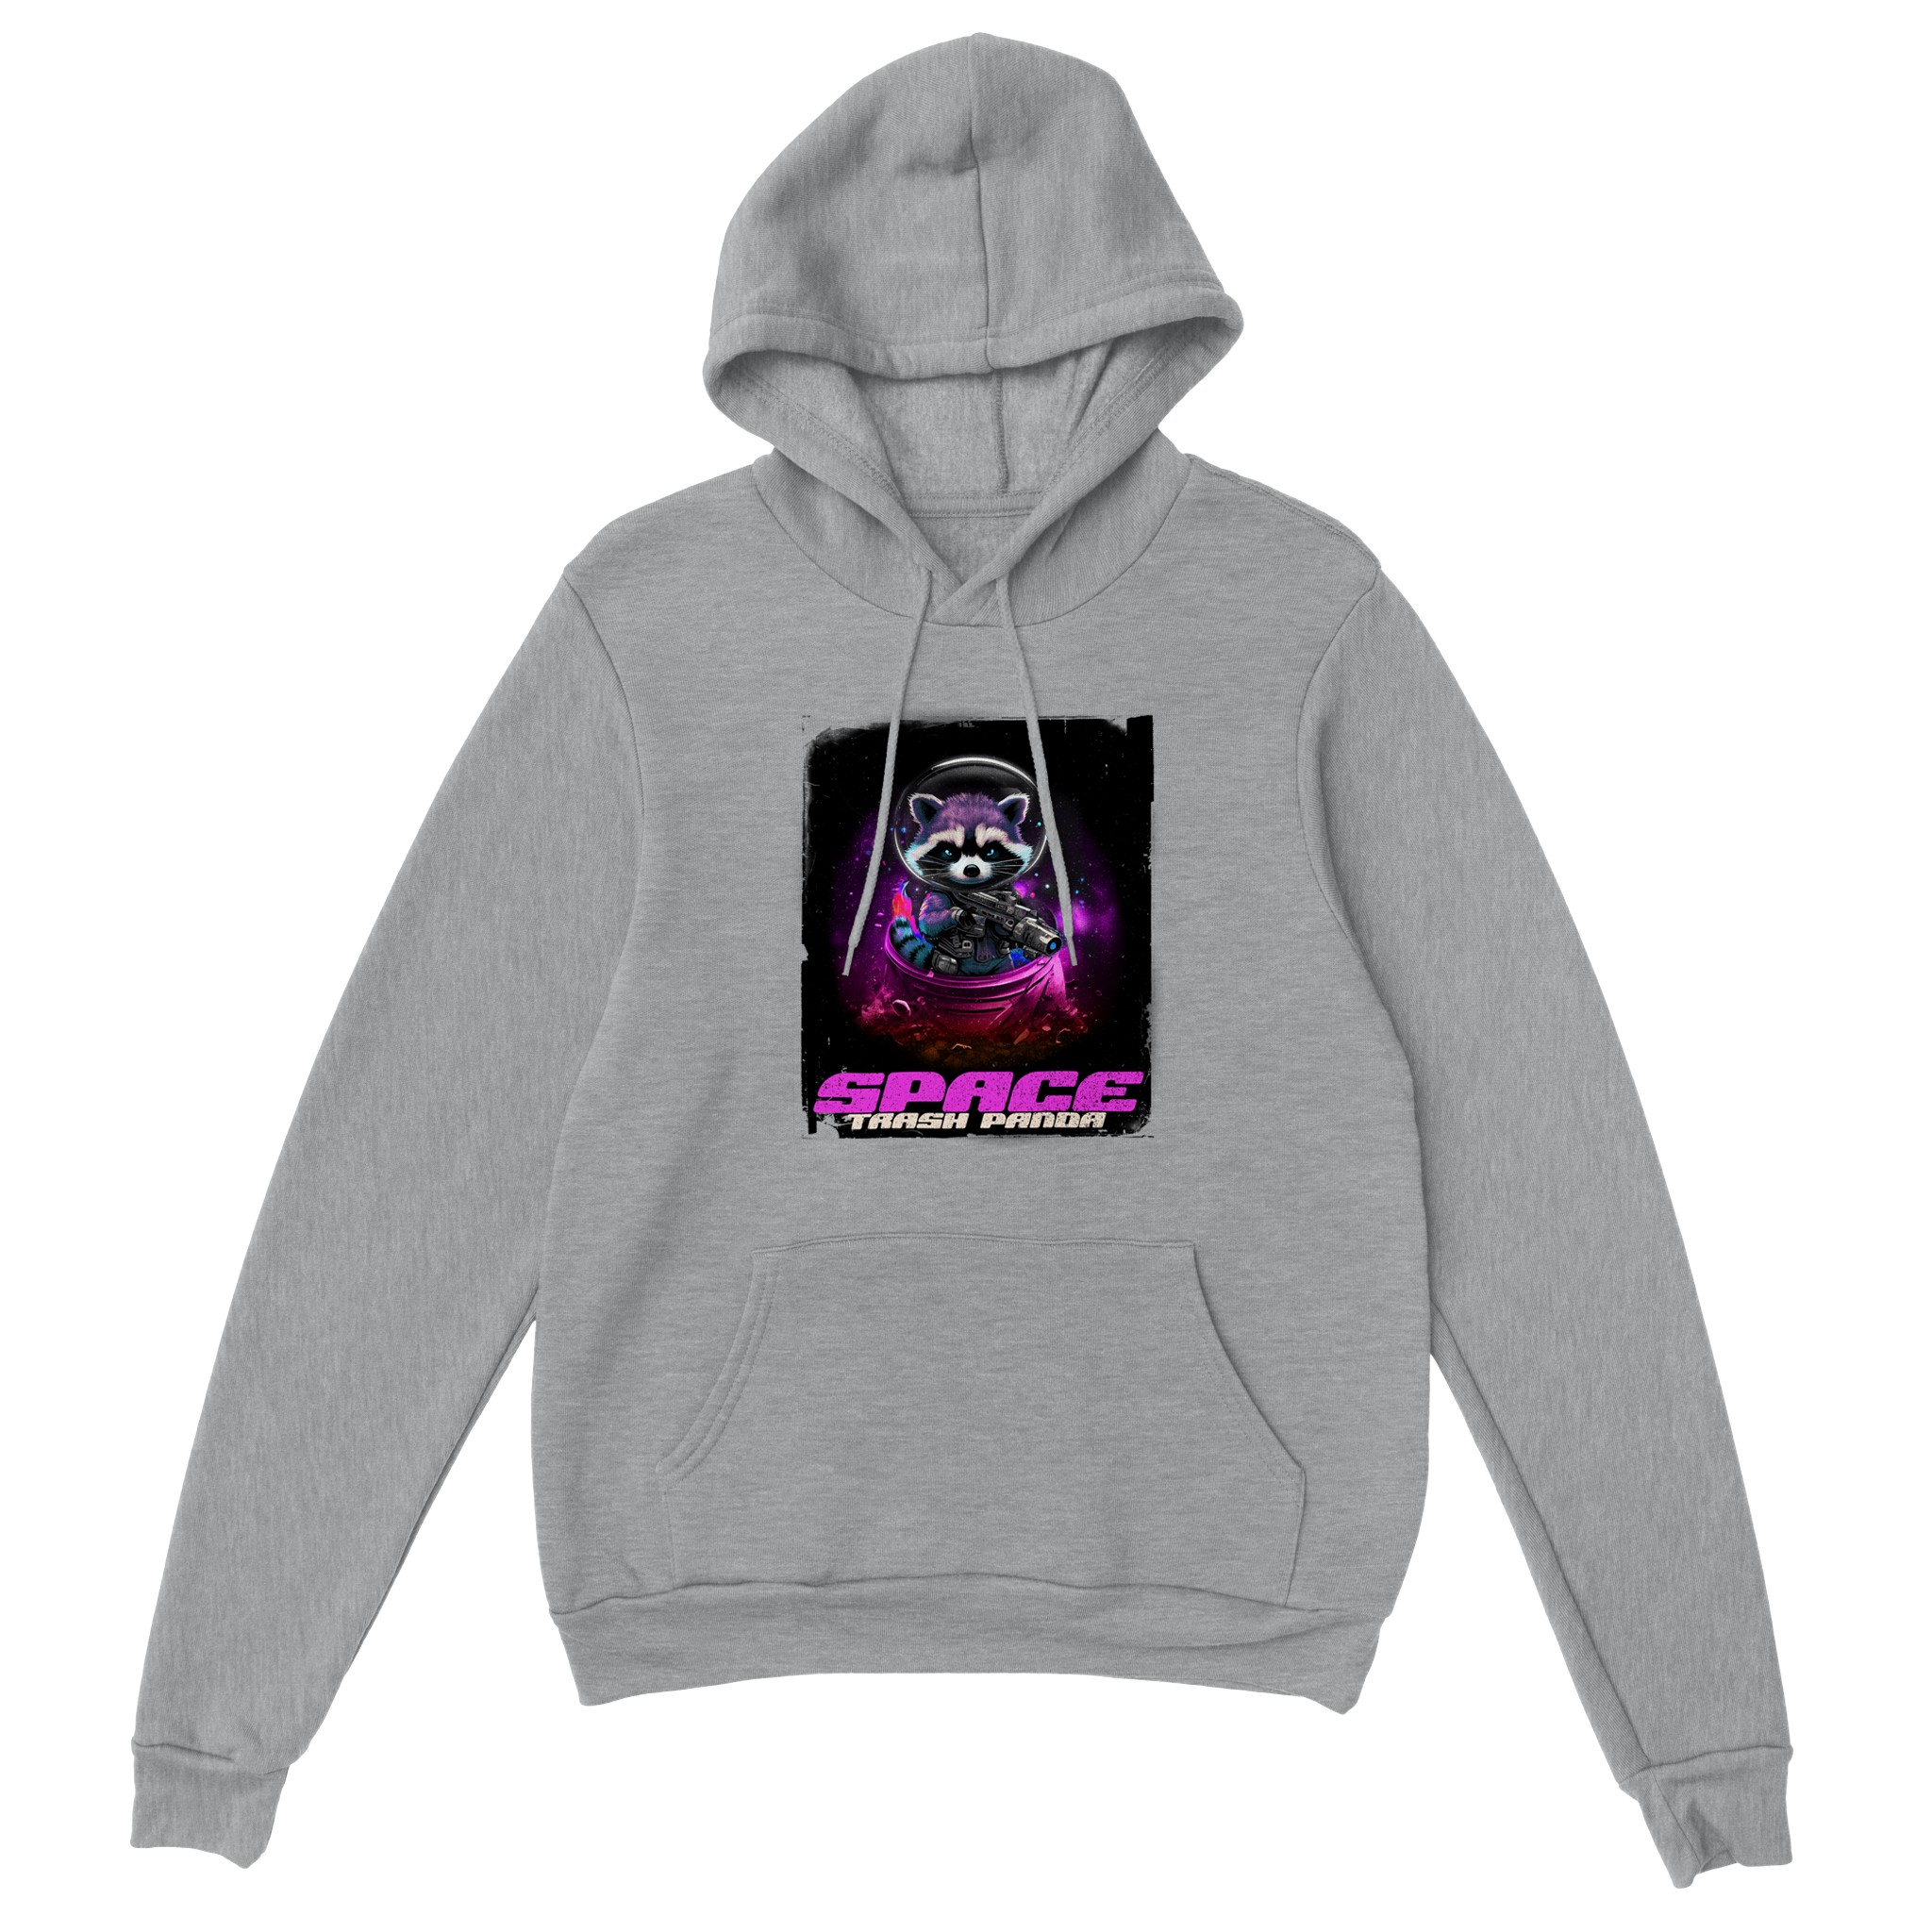 space trash panda design on a hoodie